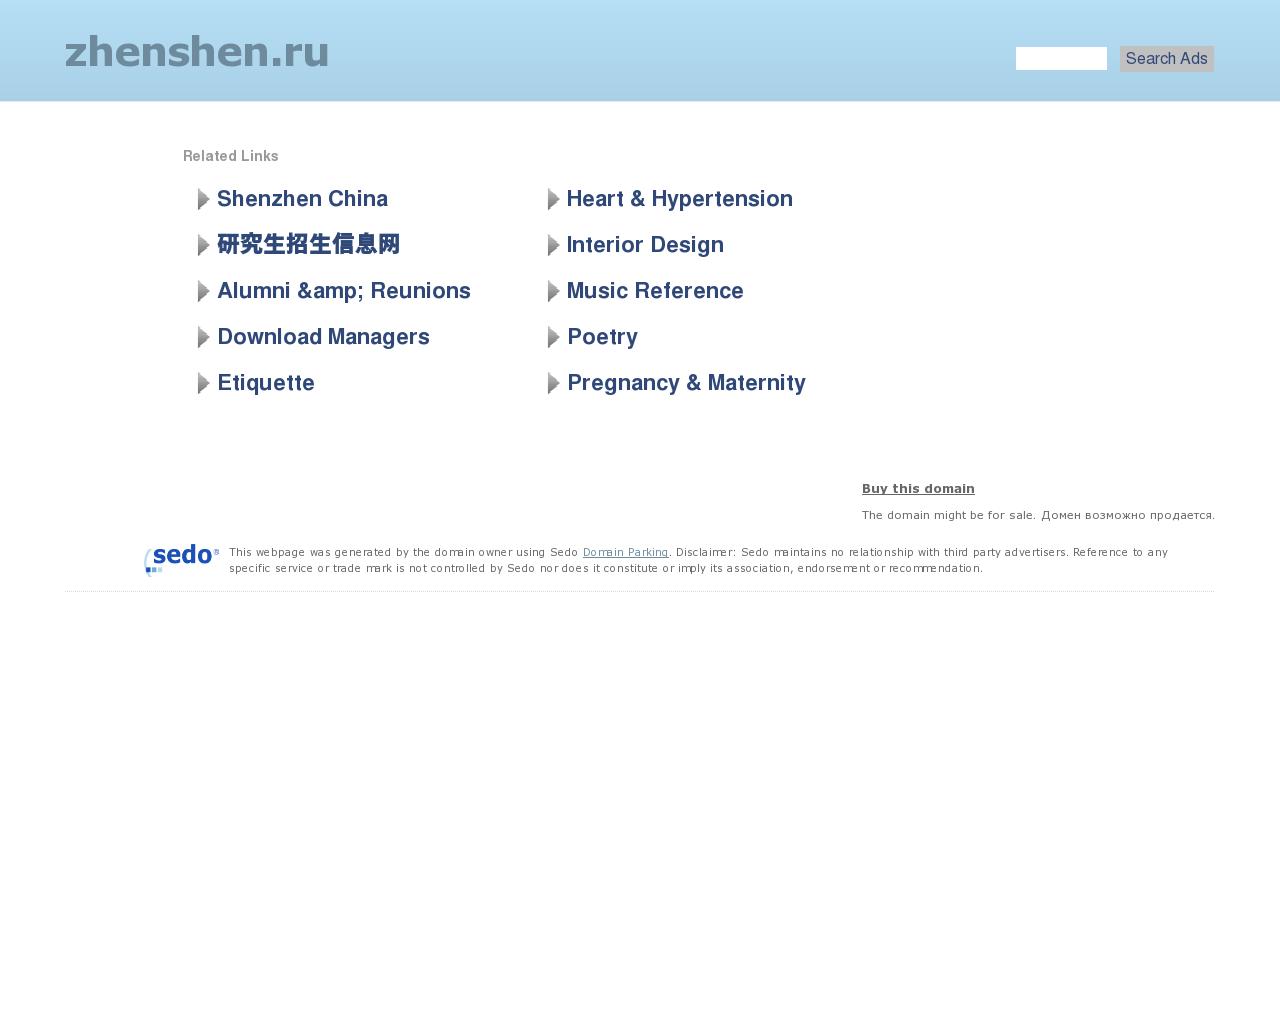 Изображение сайта zhenshen.ru в разрешении 1280x1024